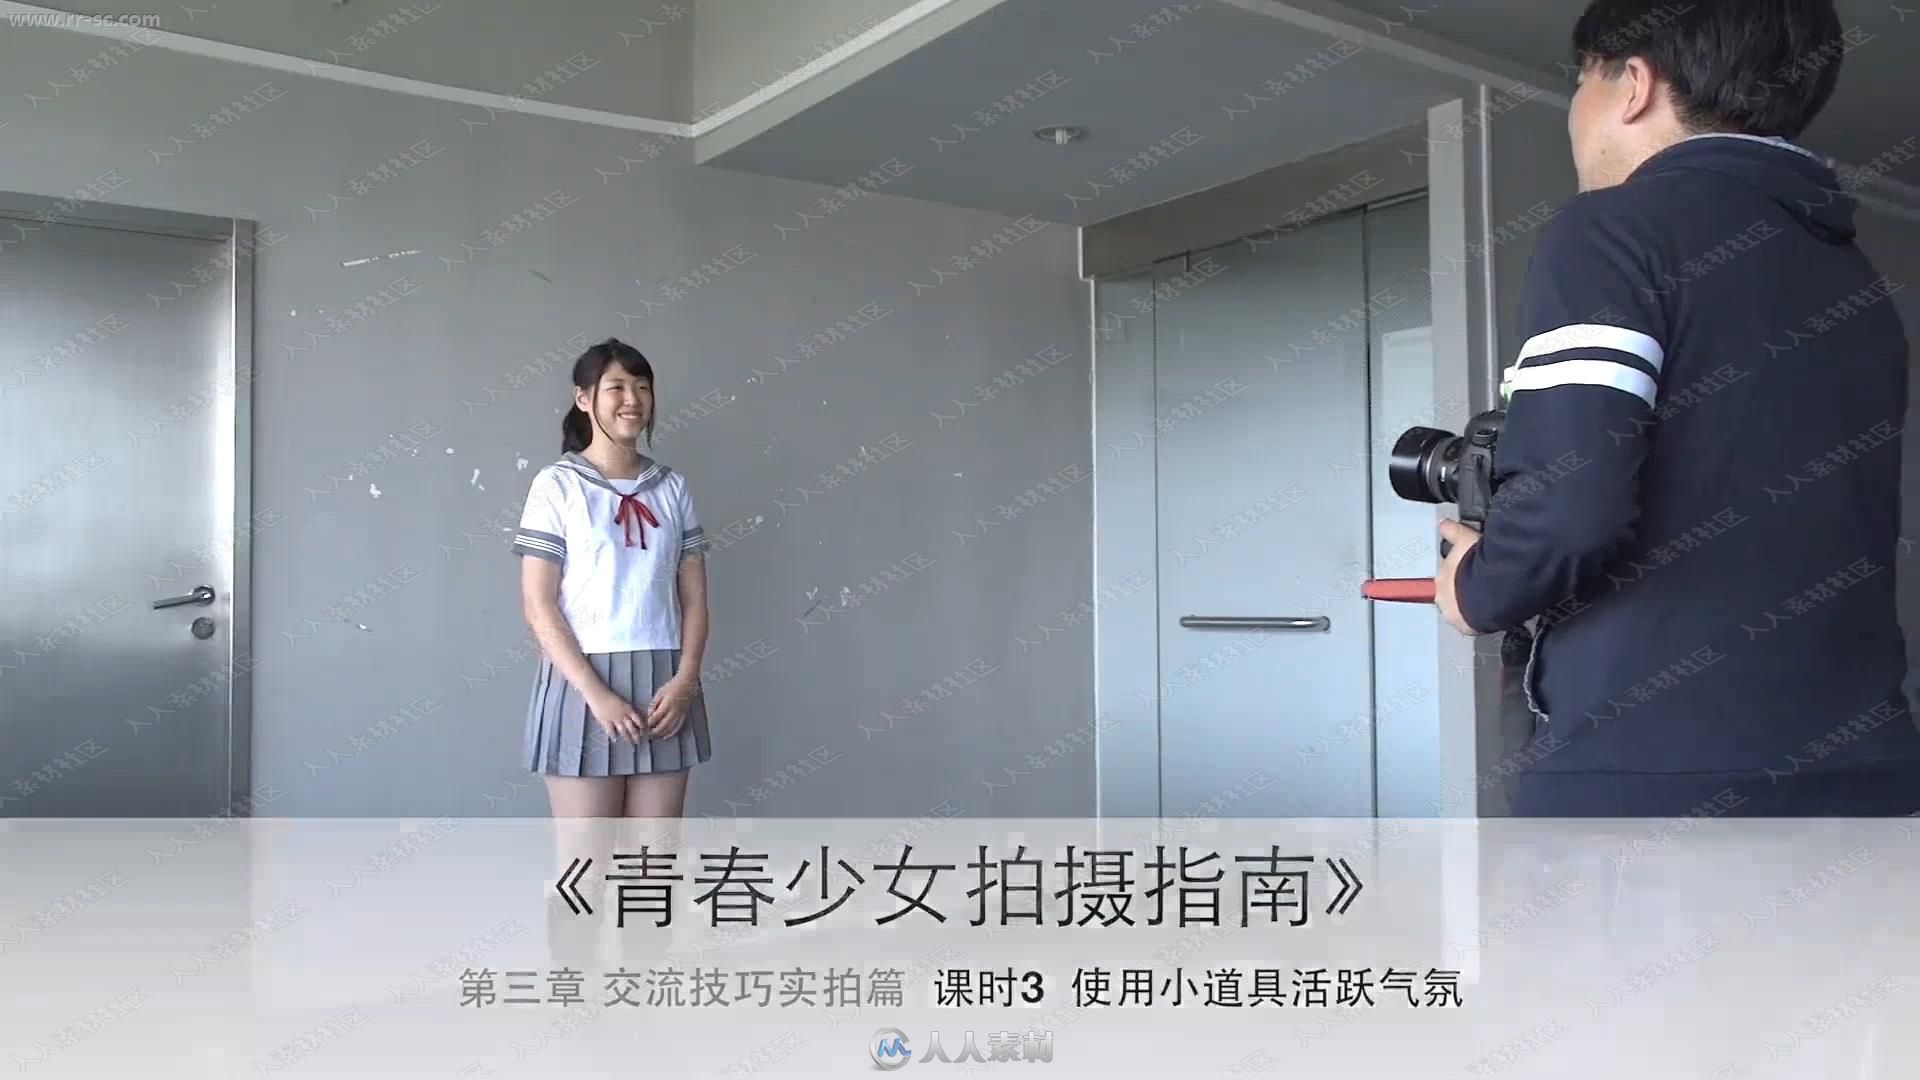 来自日本摄影大师青山裕企映像集青春少女拍摄指南视频你教程